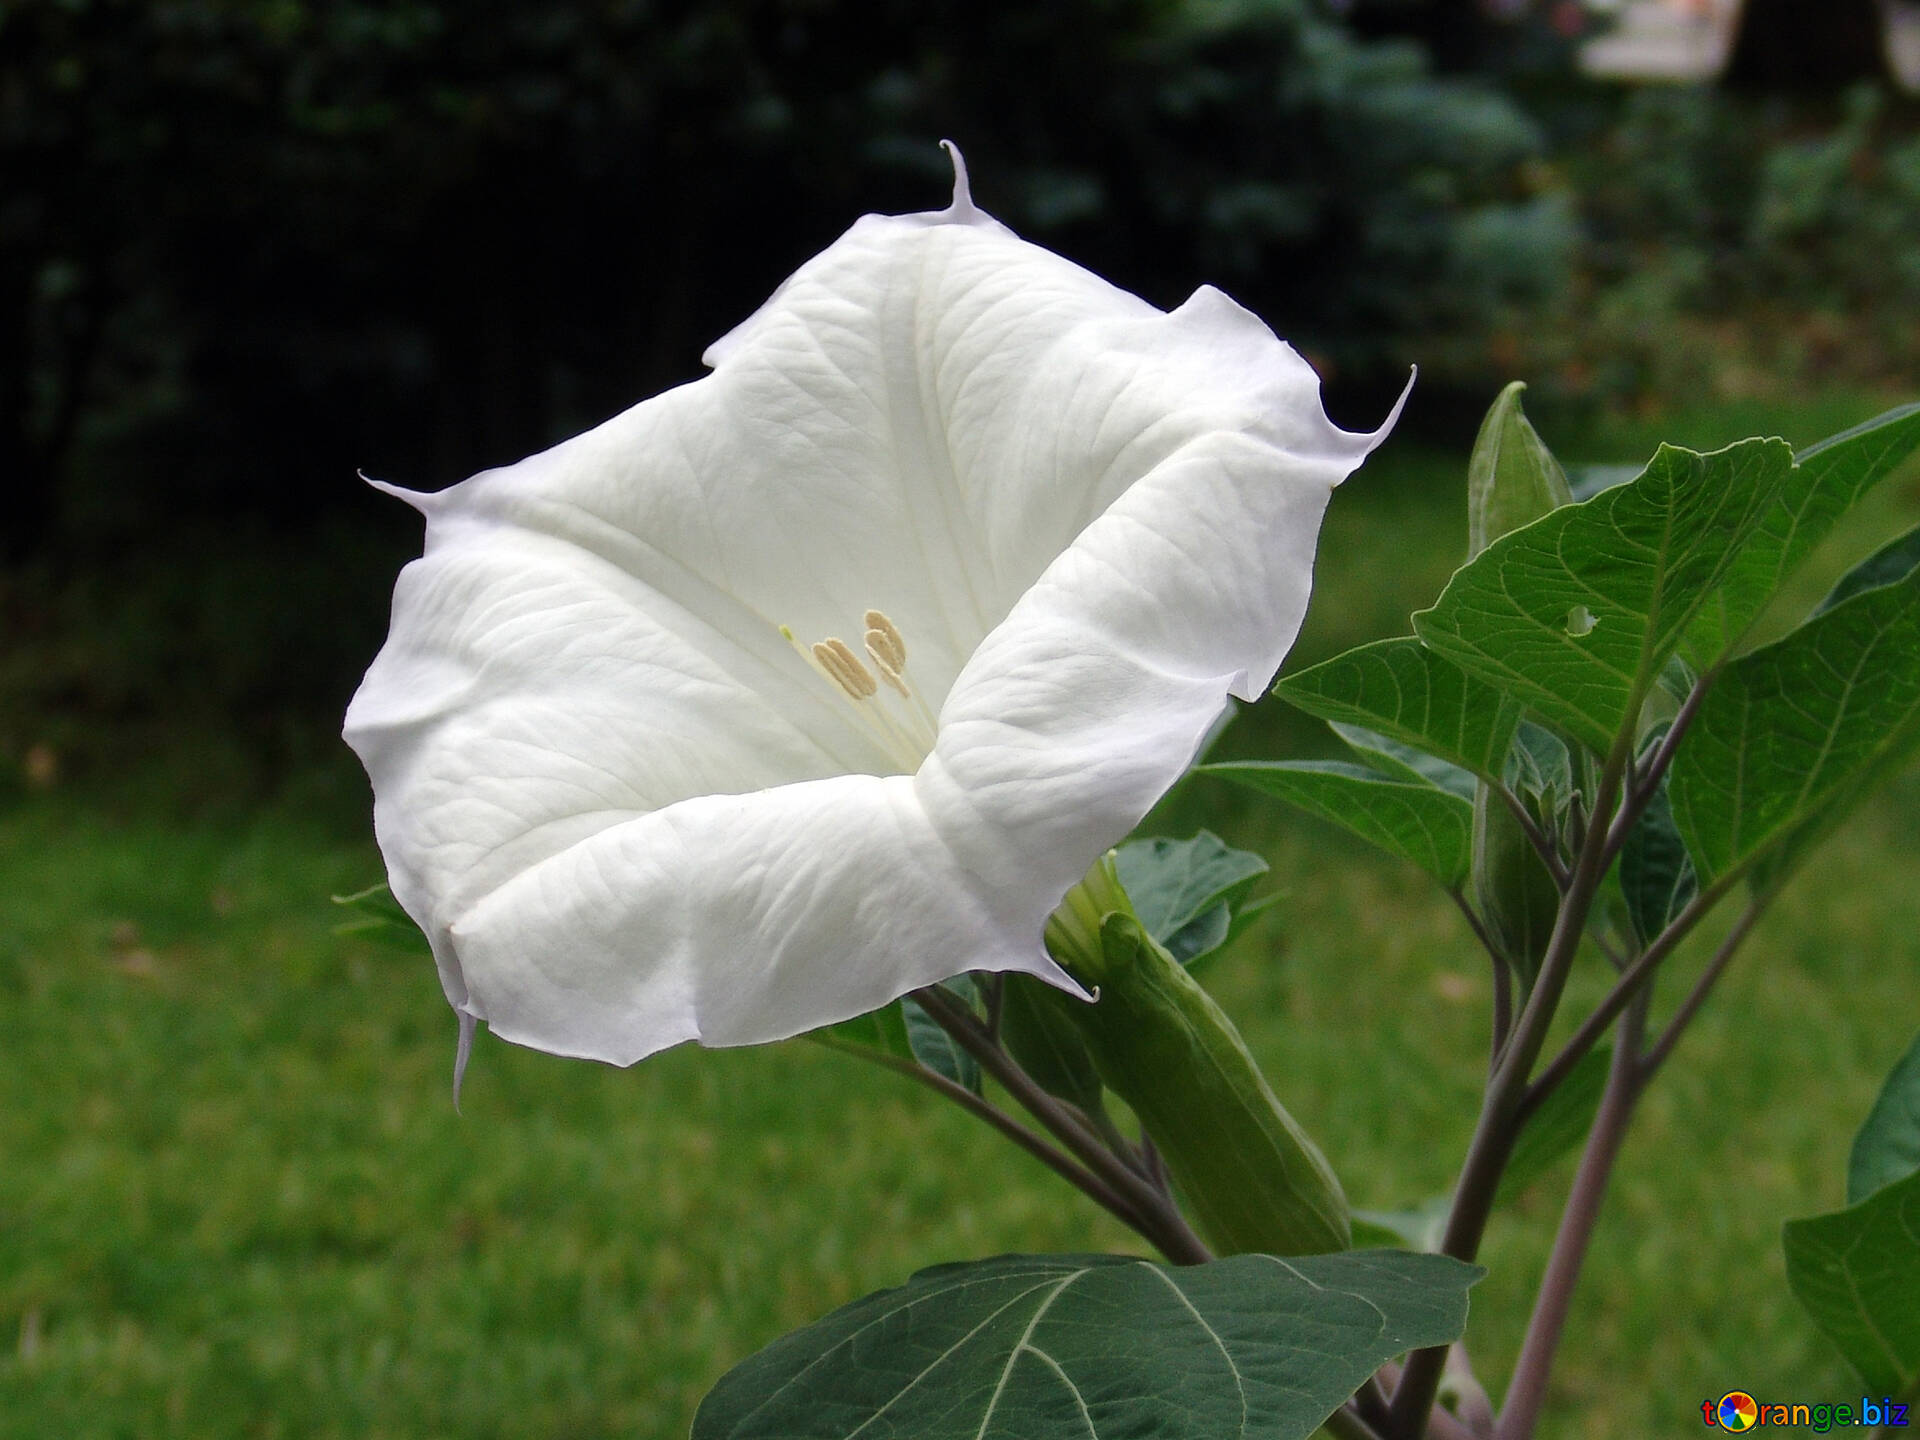 白い花 無料の写真 大きい 白い 花 チョウセンアサガオ属 無料の写真 花 6970 Torange Biz